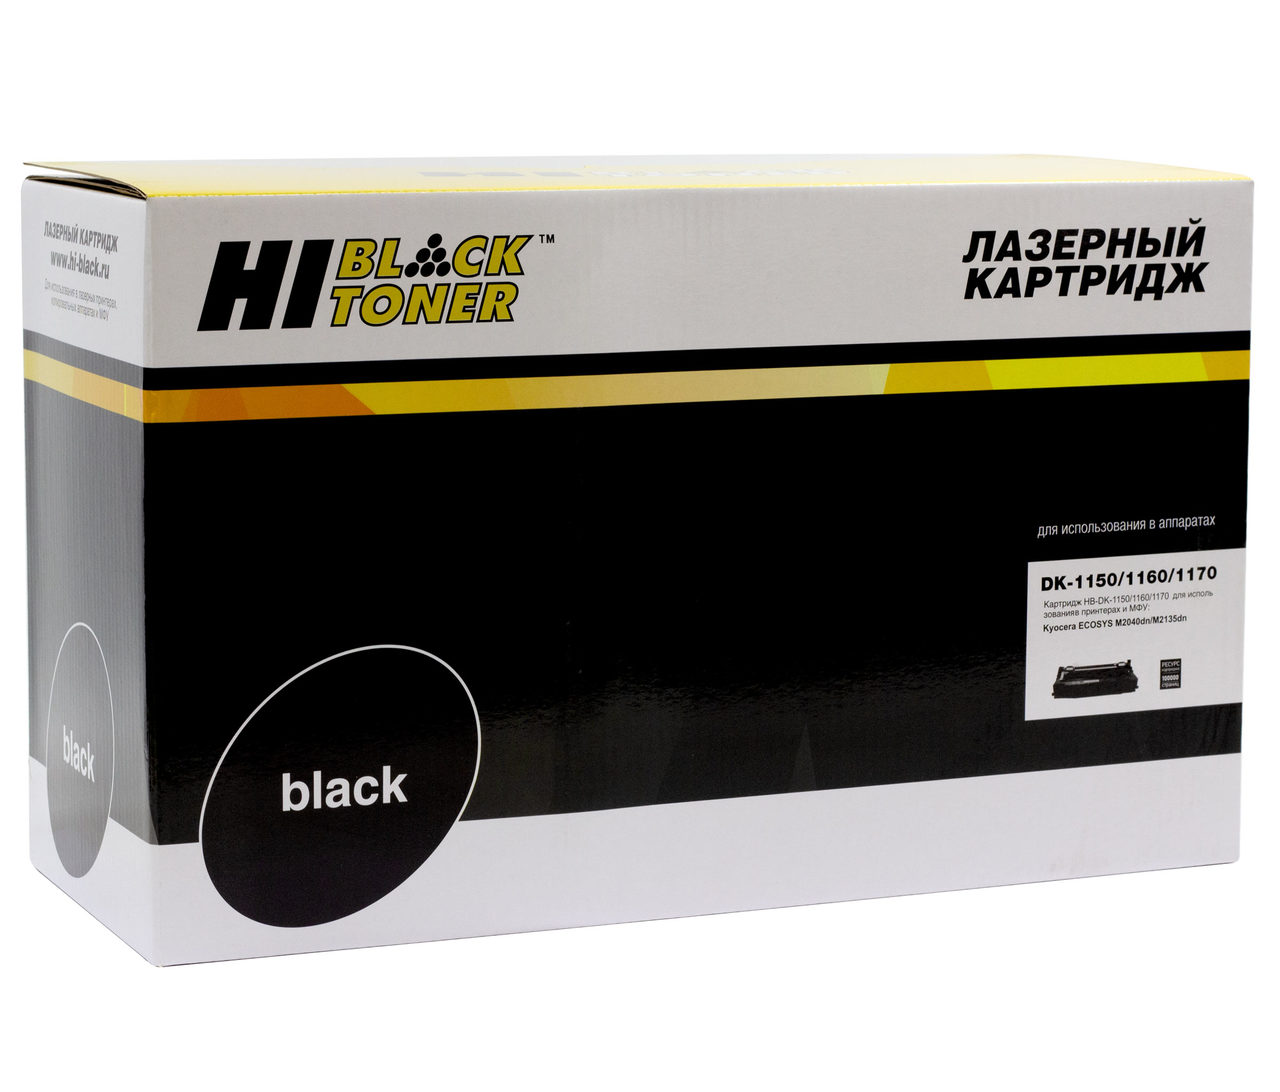 Драм-юнит Hi-Black (HB-DK-1150/1160/1170) для KyoceraECOSYS M2040dn/M2135dn, Универс., 100К